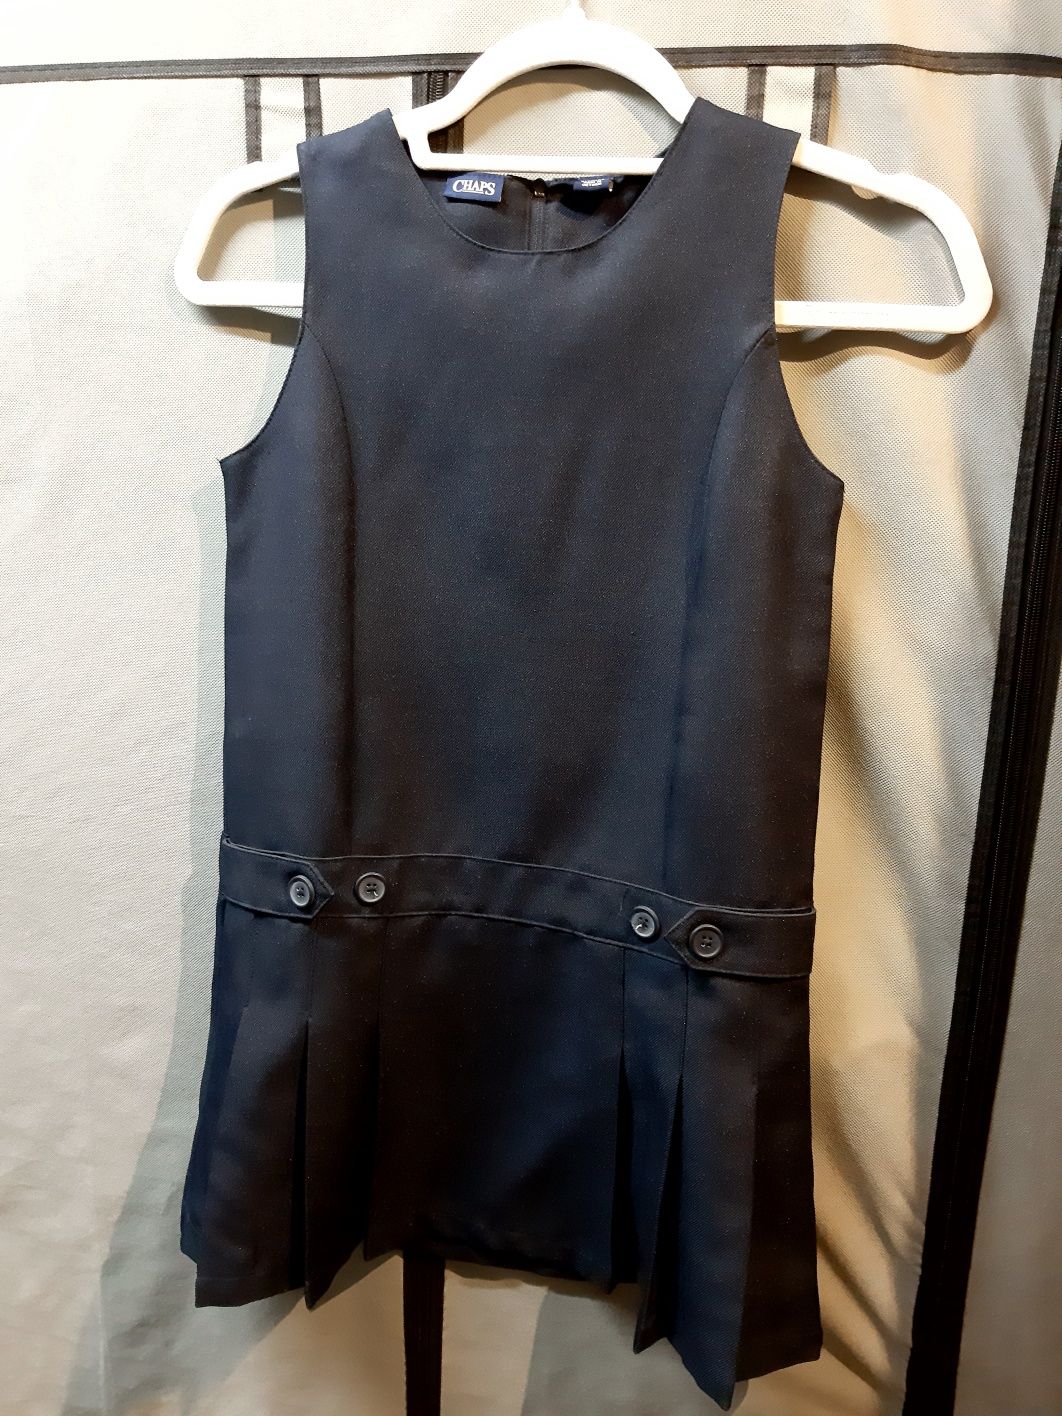 Chaps sukienka galowa, rozmiar ok. 128-134.